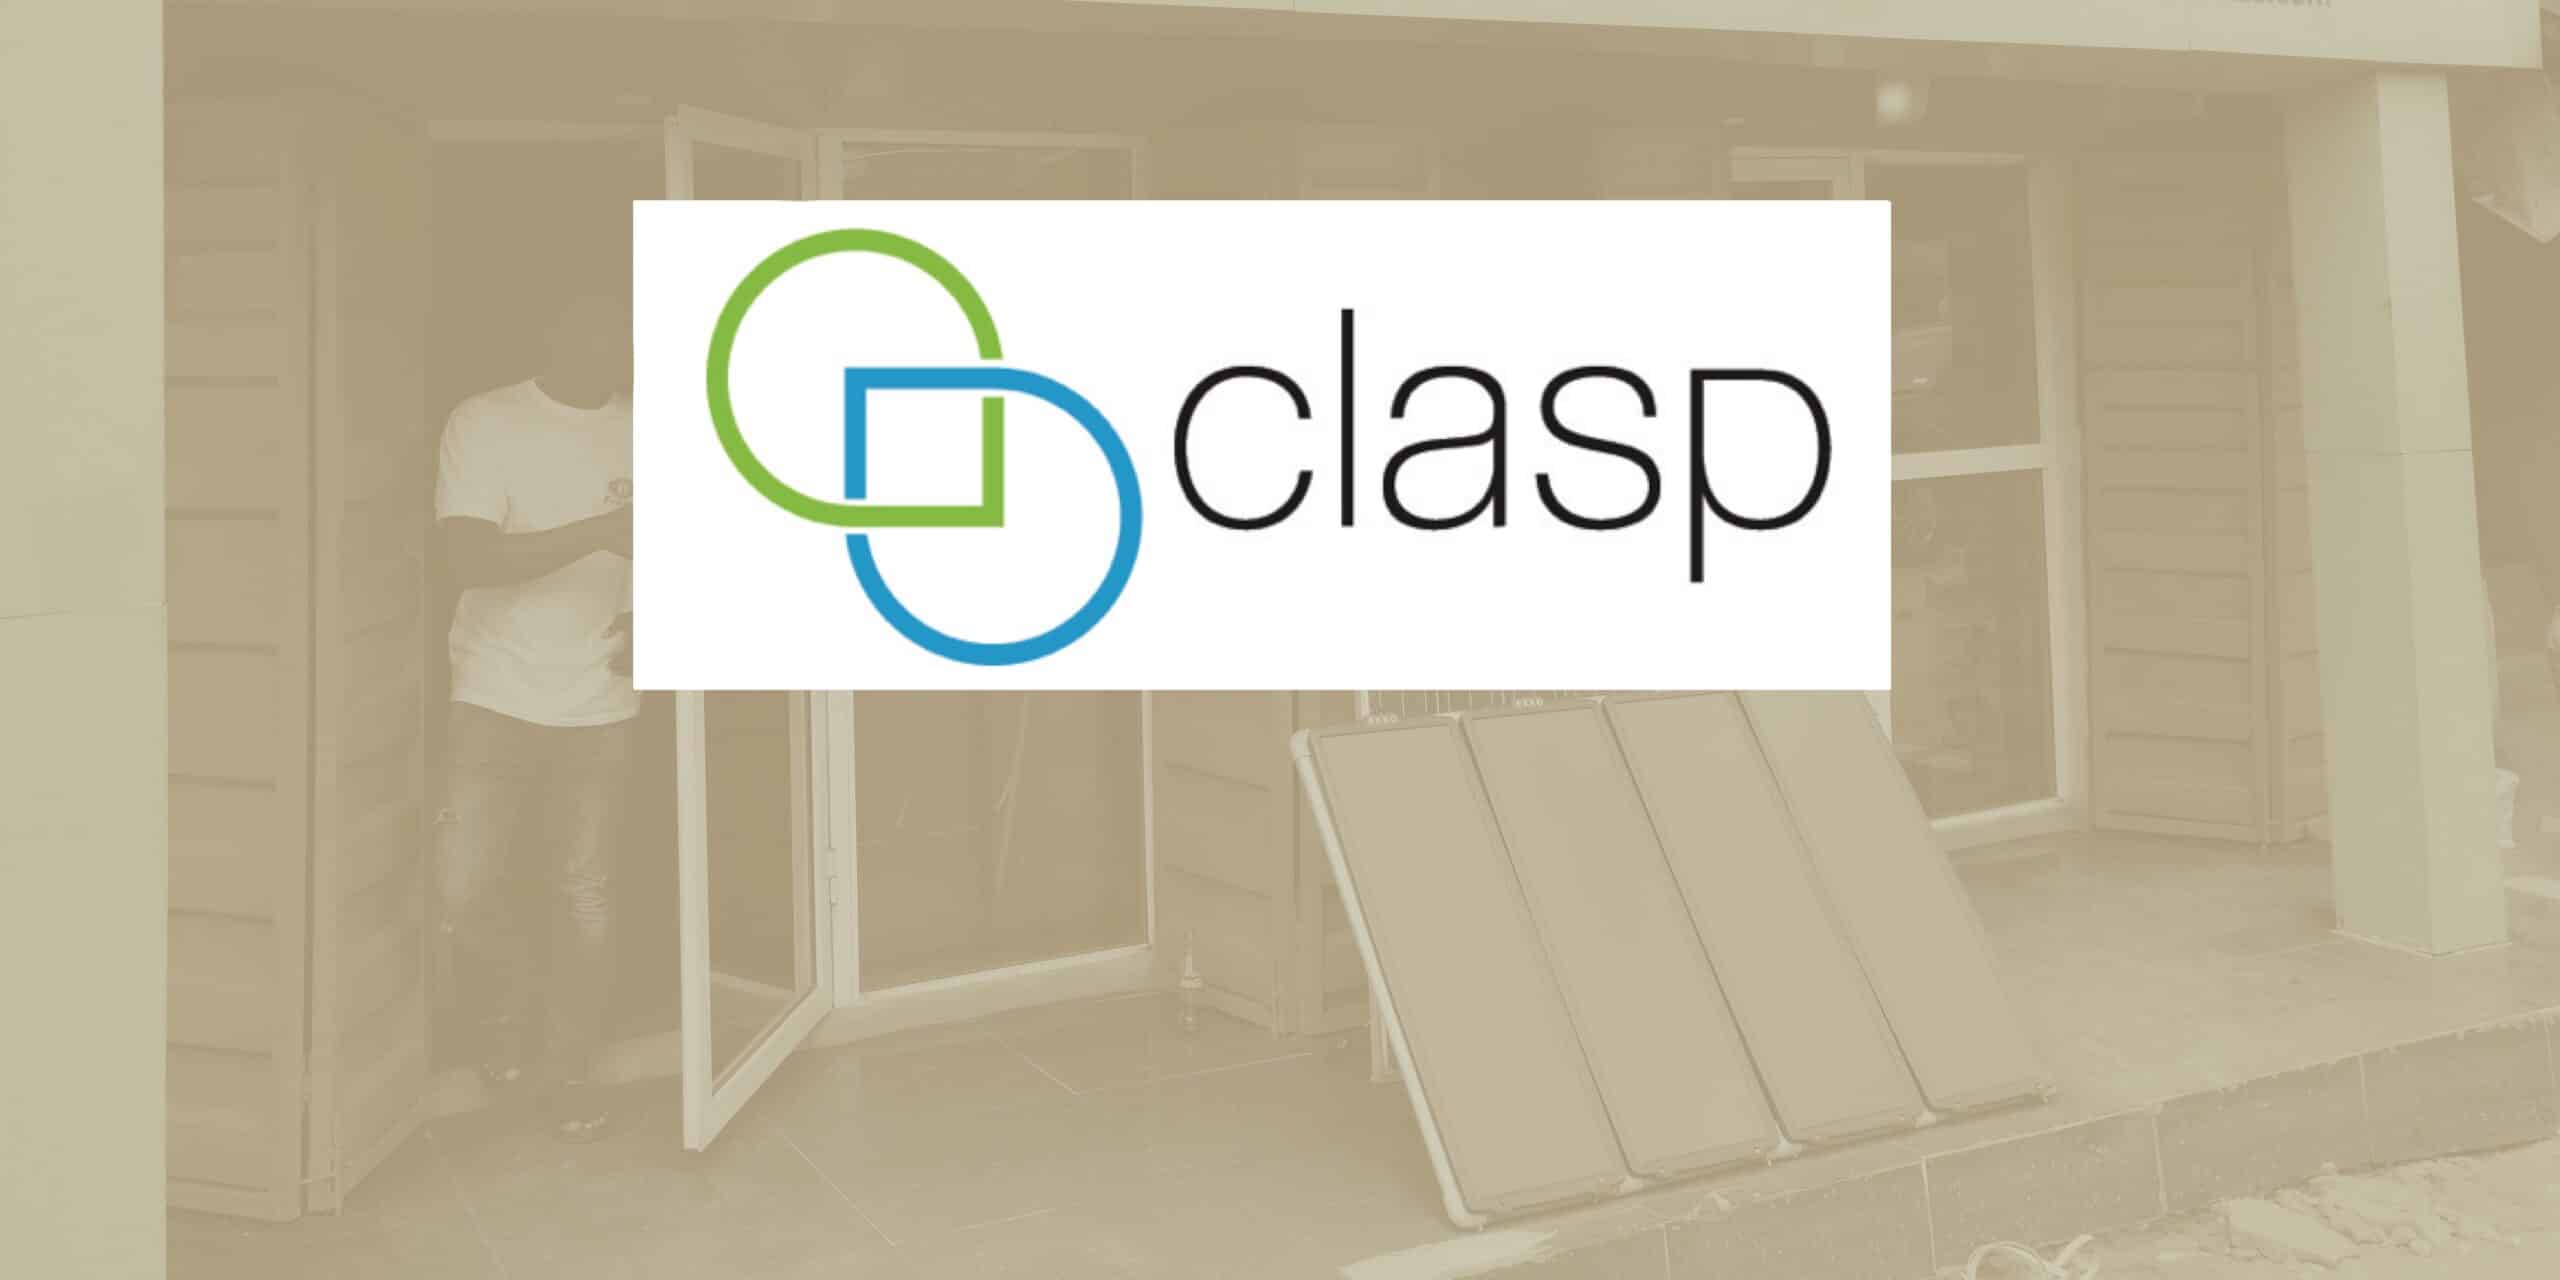 Clasp – Off-Grid Appliance Market Survey and Procurement